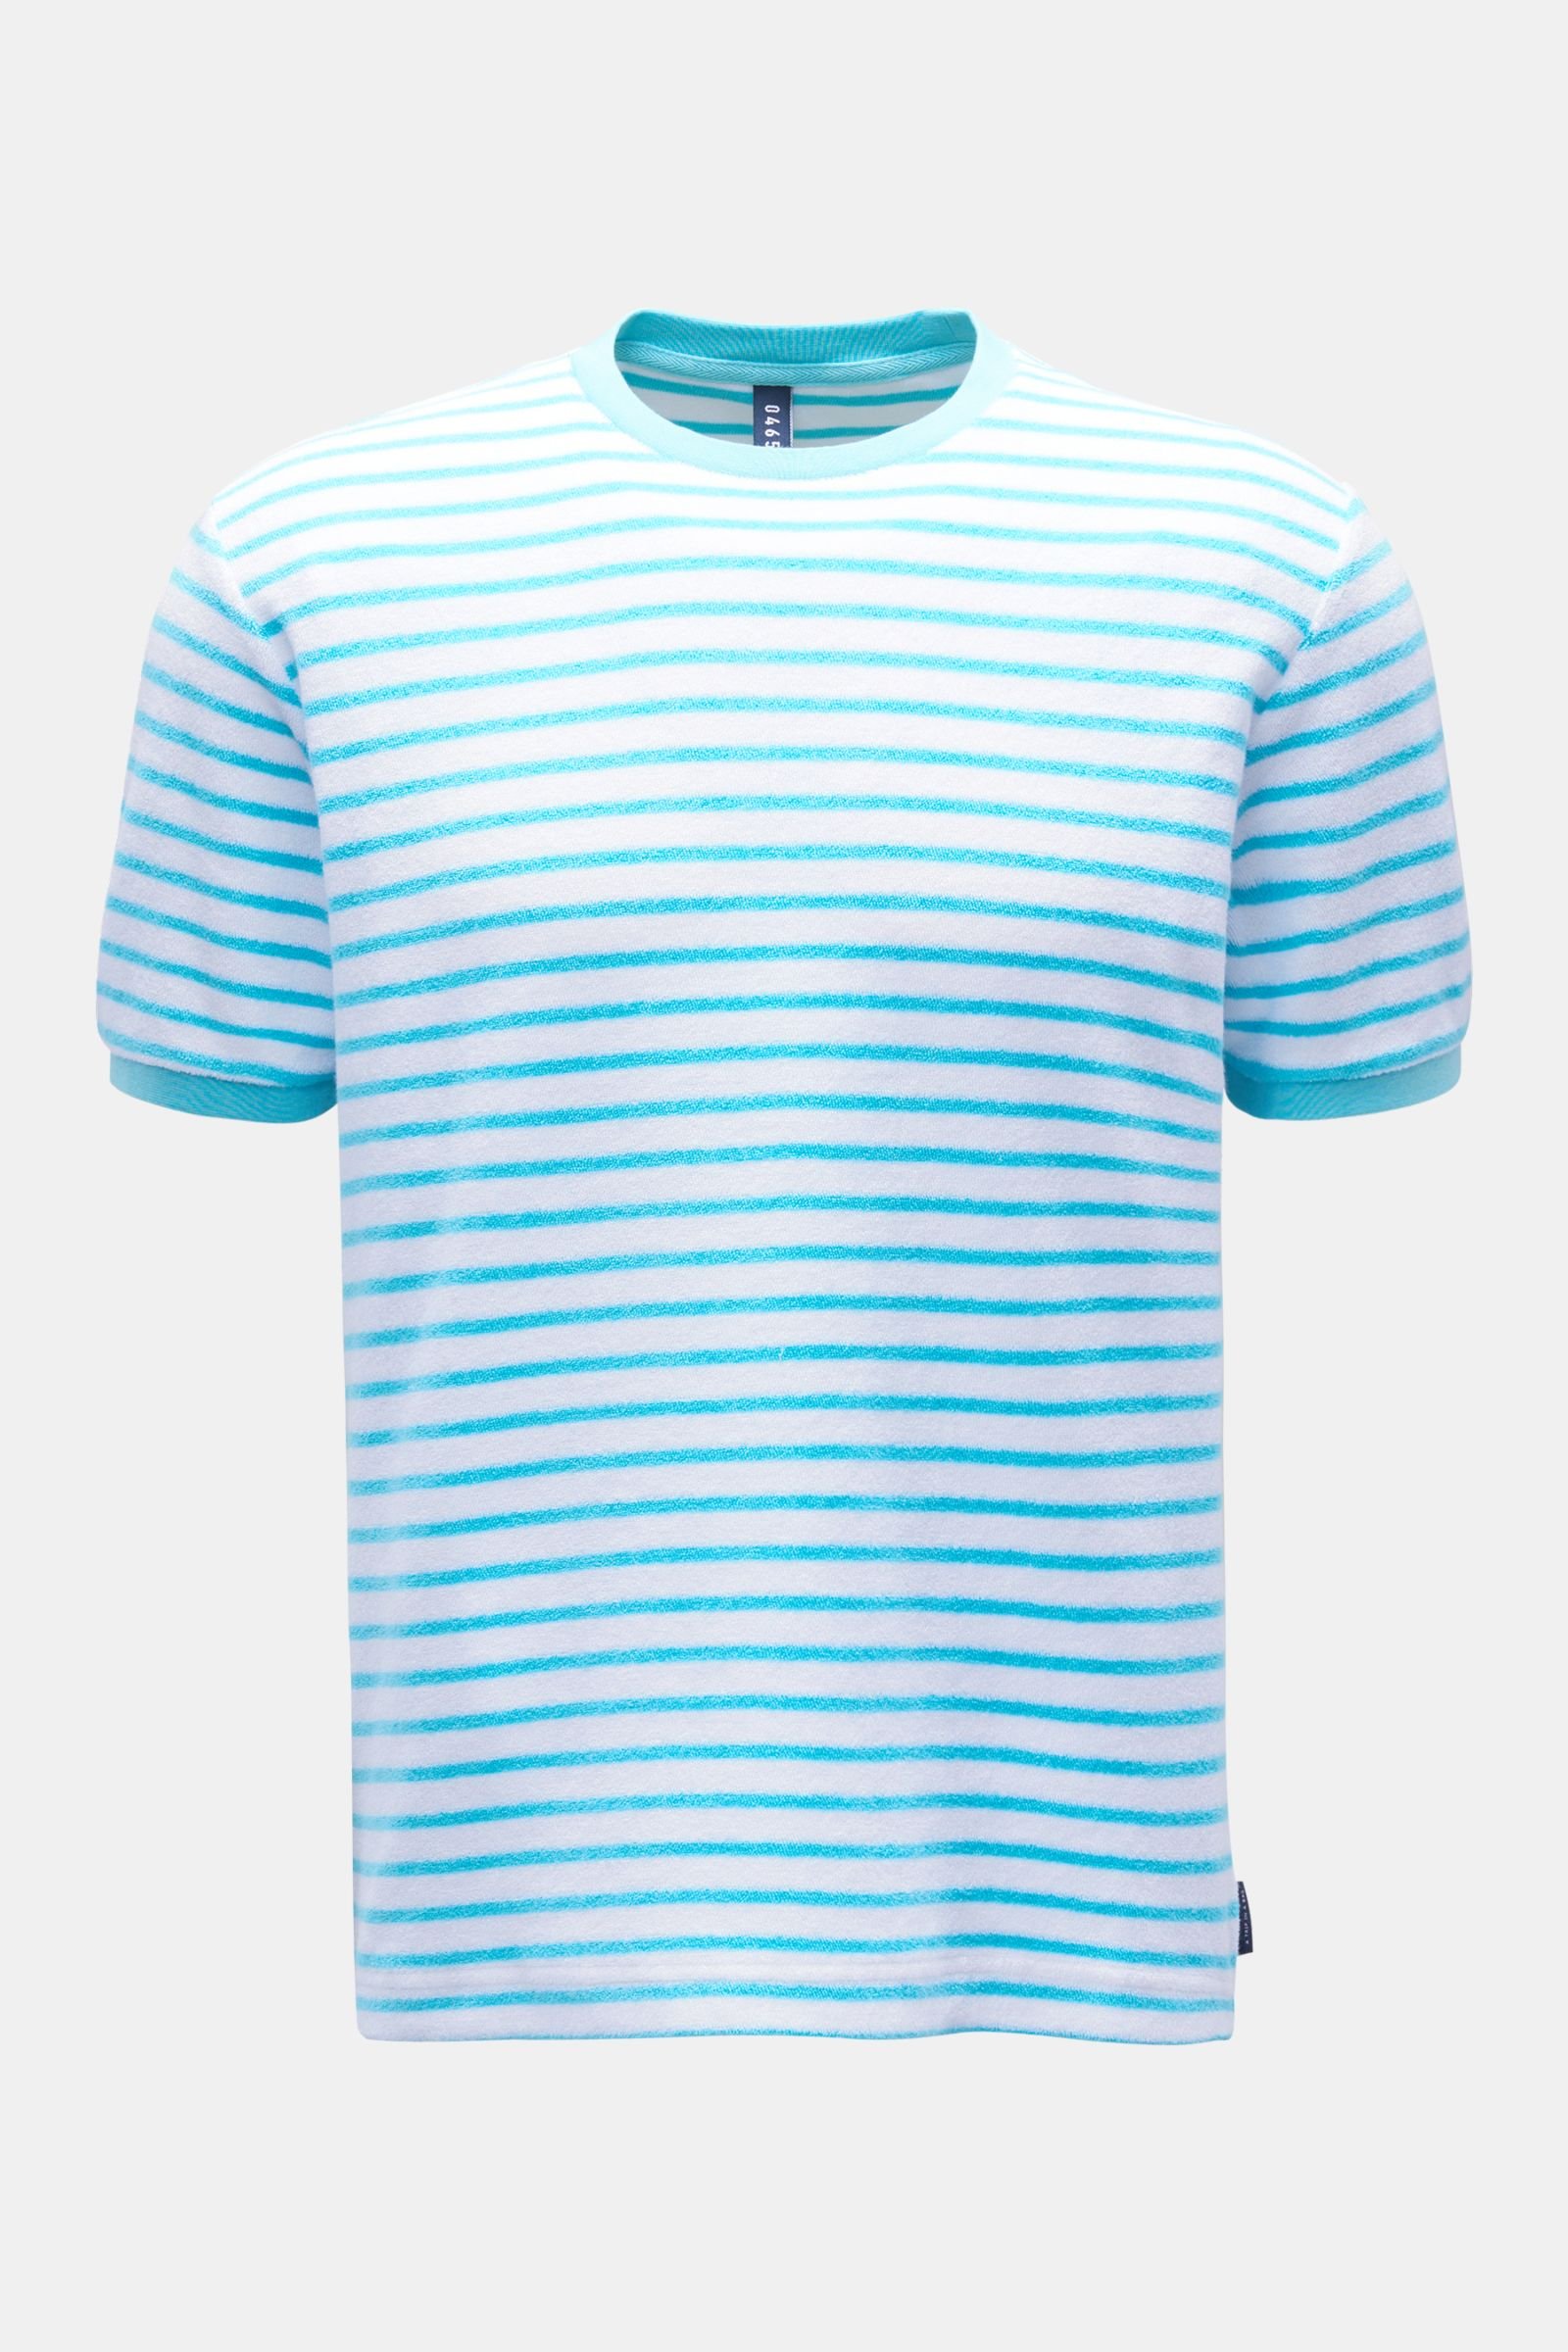 Frottee Rundhals-T-Shirt 'Terry Stripe Tee' türkis/weiß gestreift